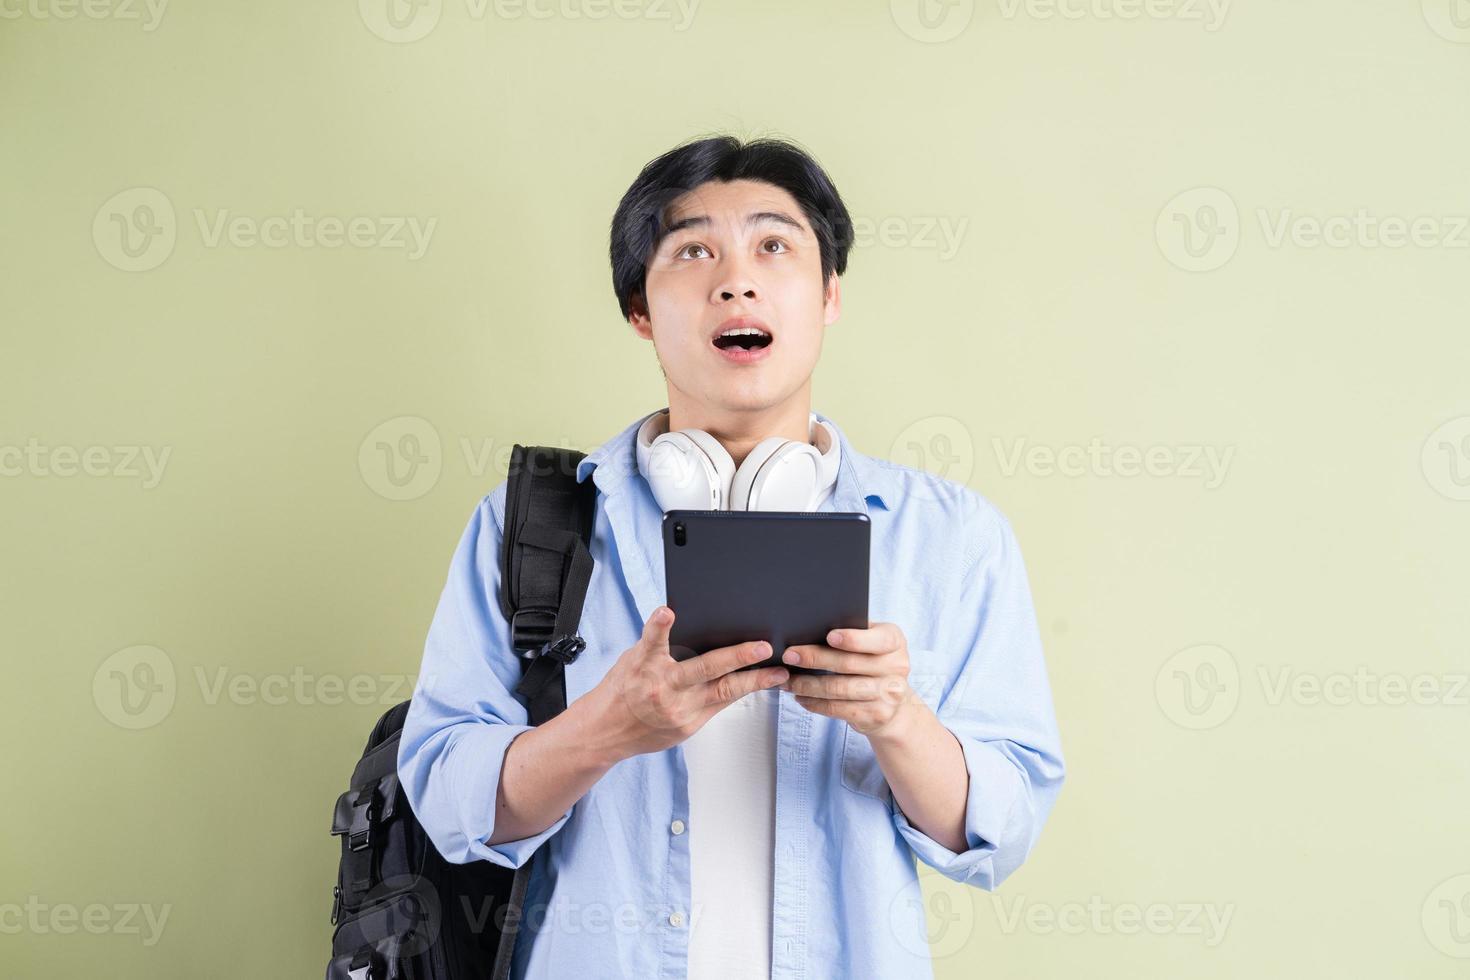 mannelijke Aziatische student die de tablet gebruikte en met een verbaasde uitdrukking opkeek foto